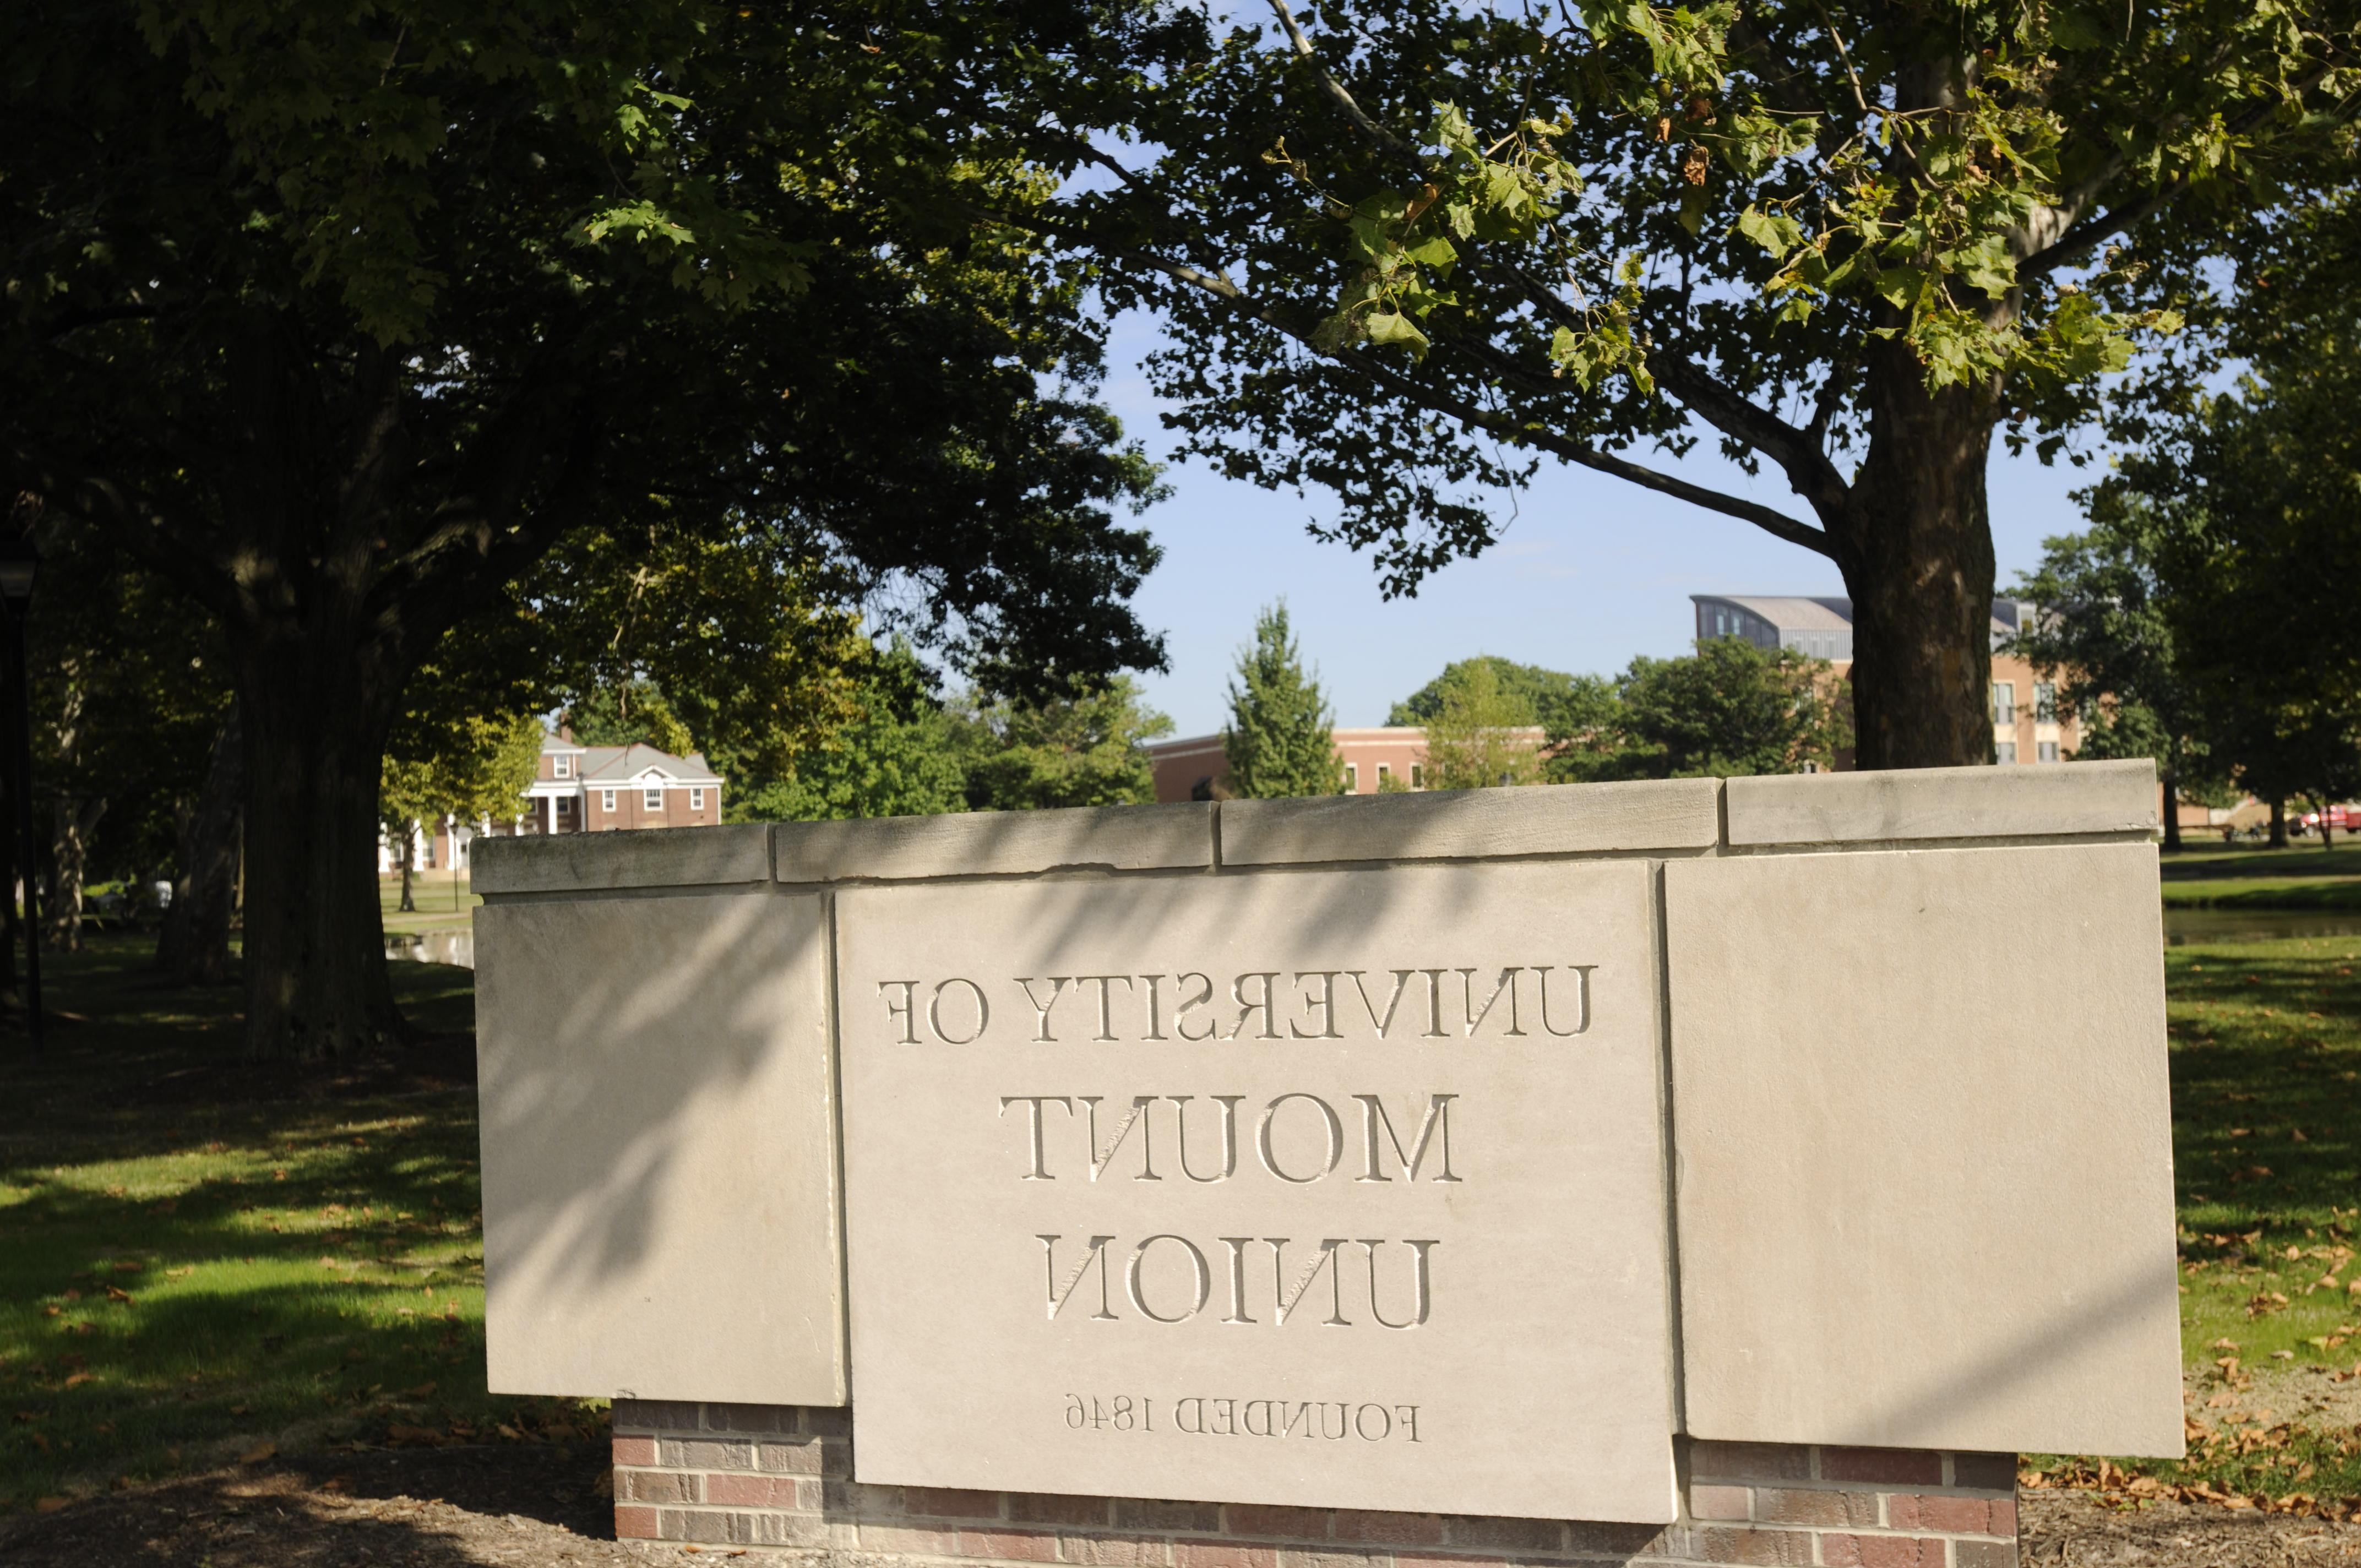 University of Mount Union Stone Entrance